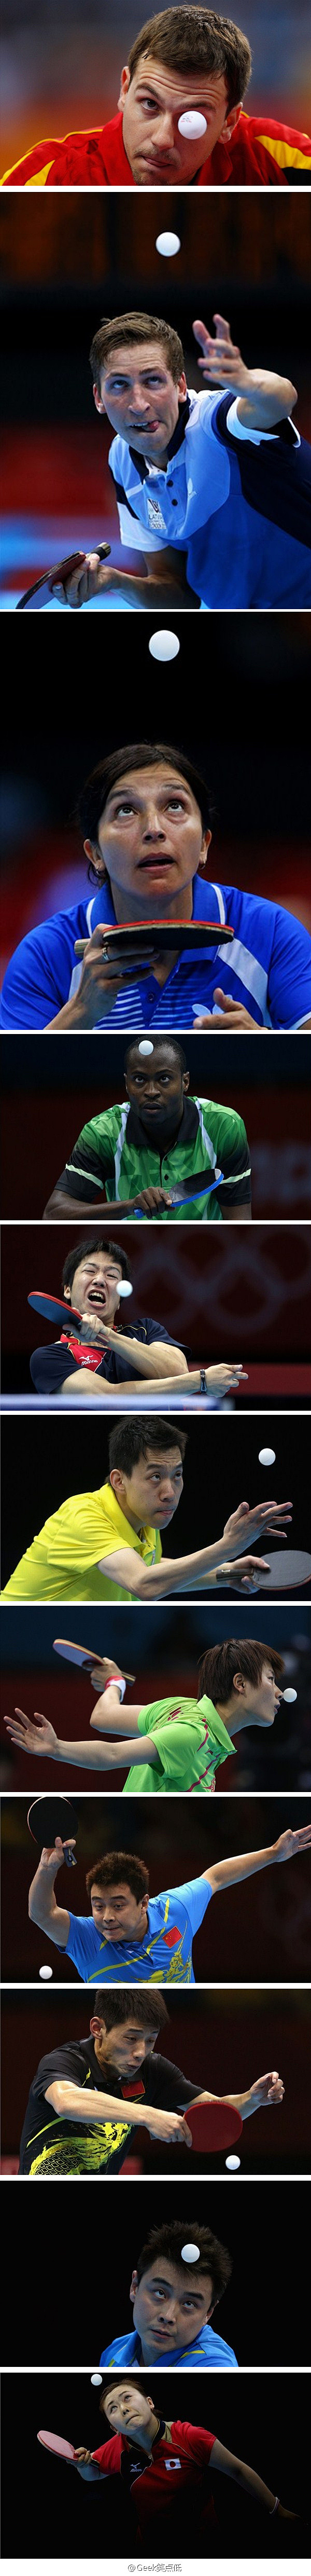 【原图来自伦敦奥运官网。。。】你觉得乒乓...